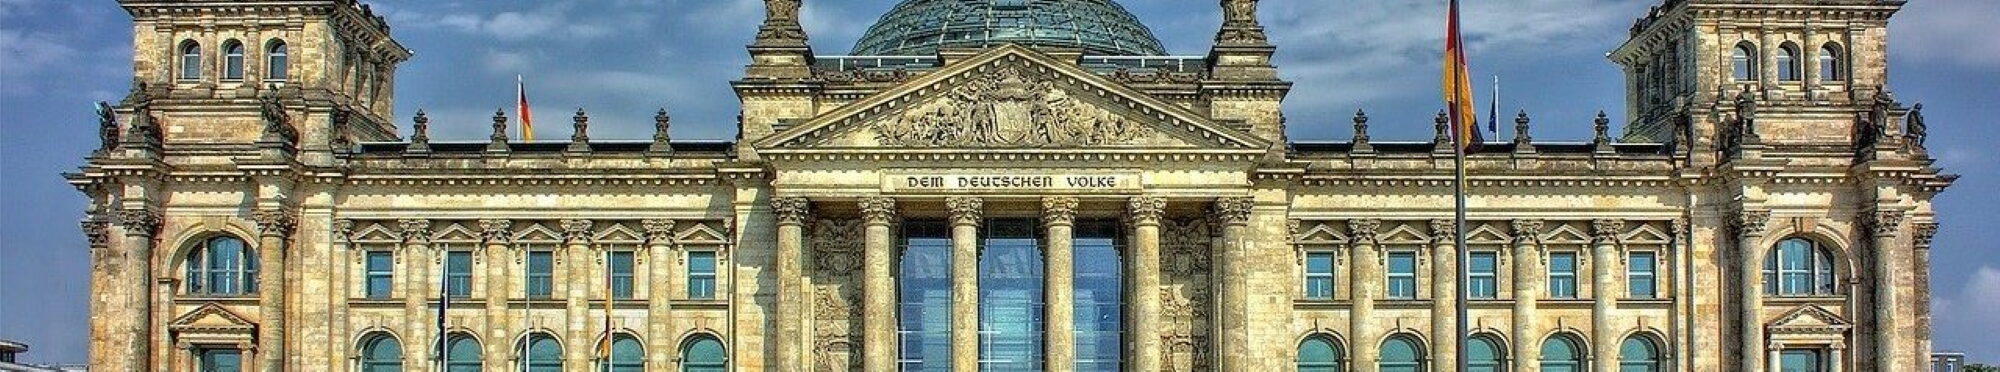 Wahlen Reichstag